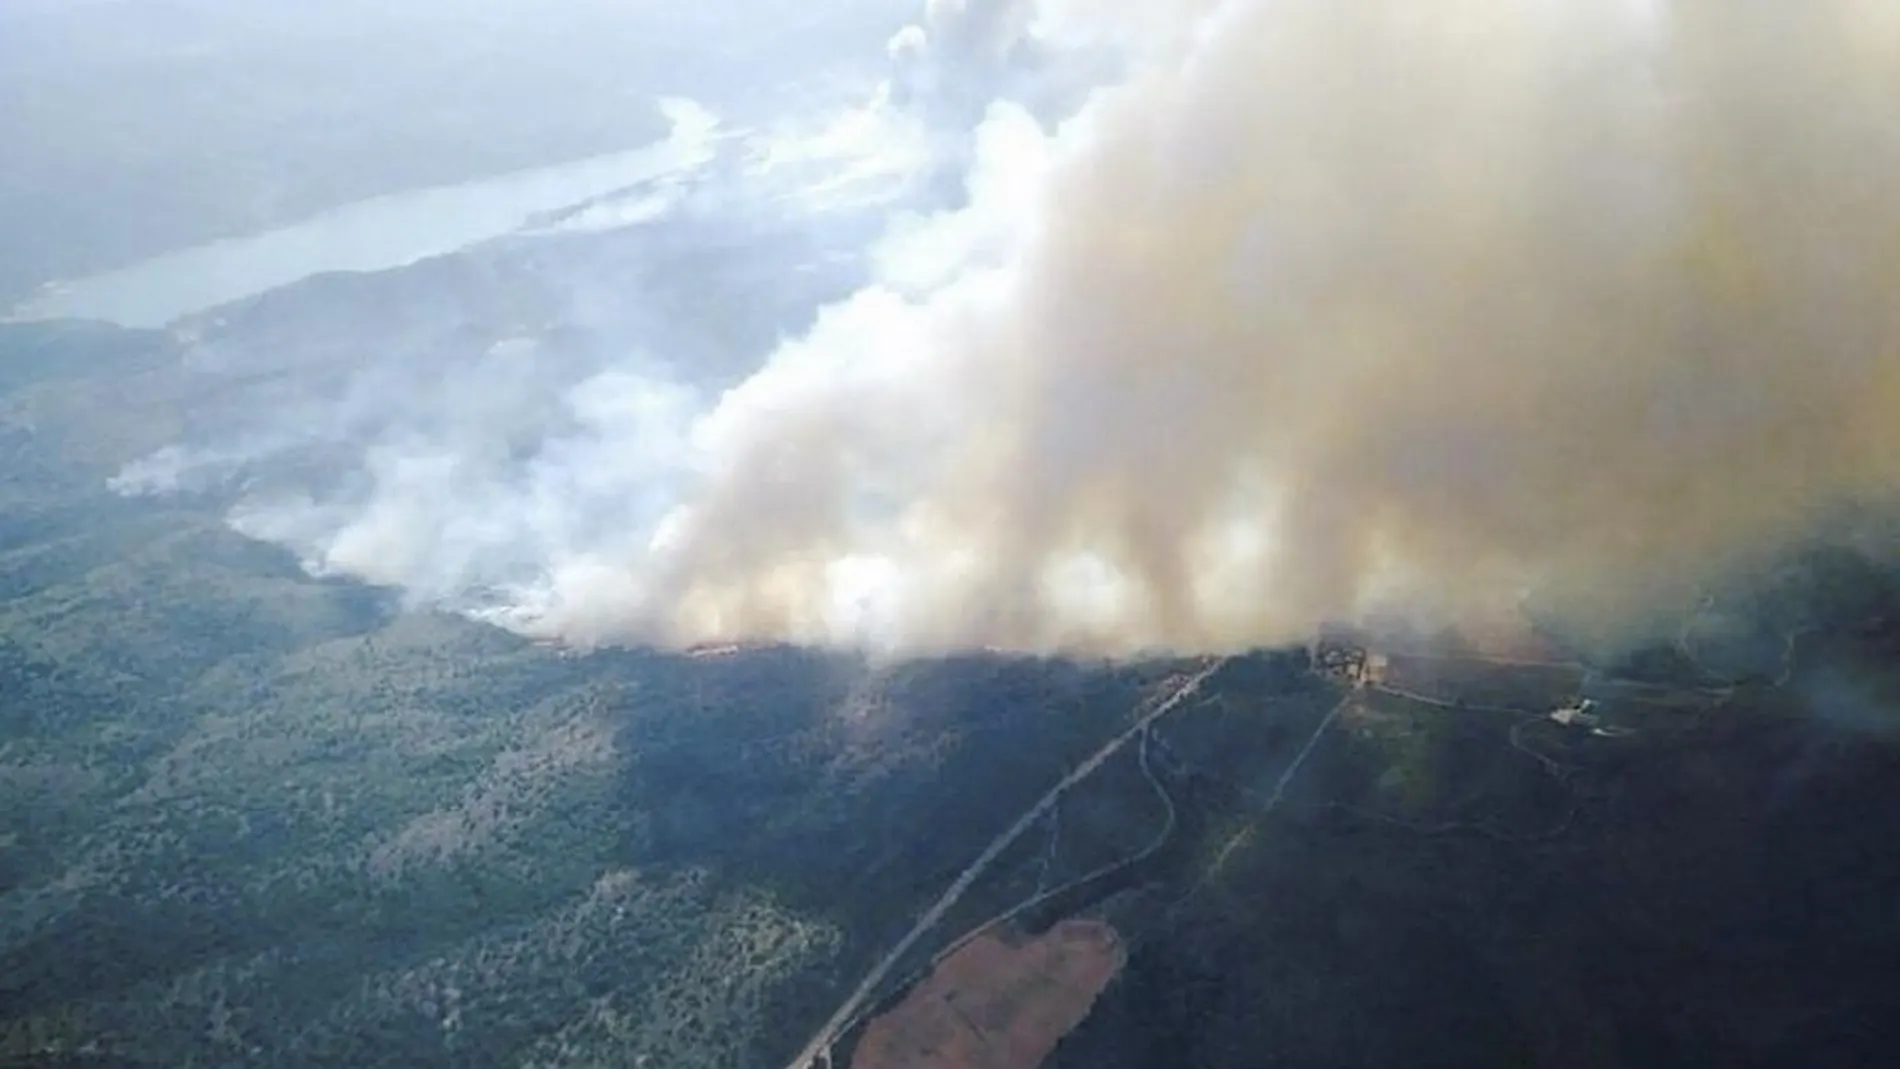 Imagen aérea de la superficie afectada por el incendio, que todavía no ha sido controlado